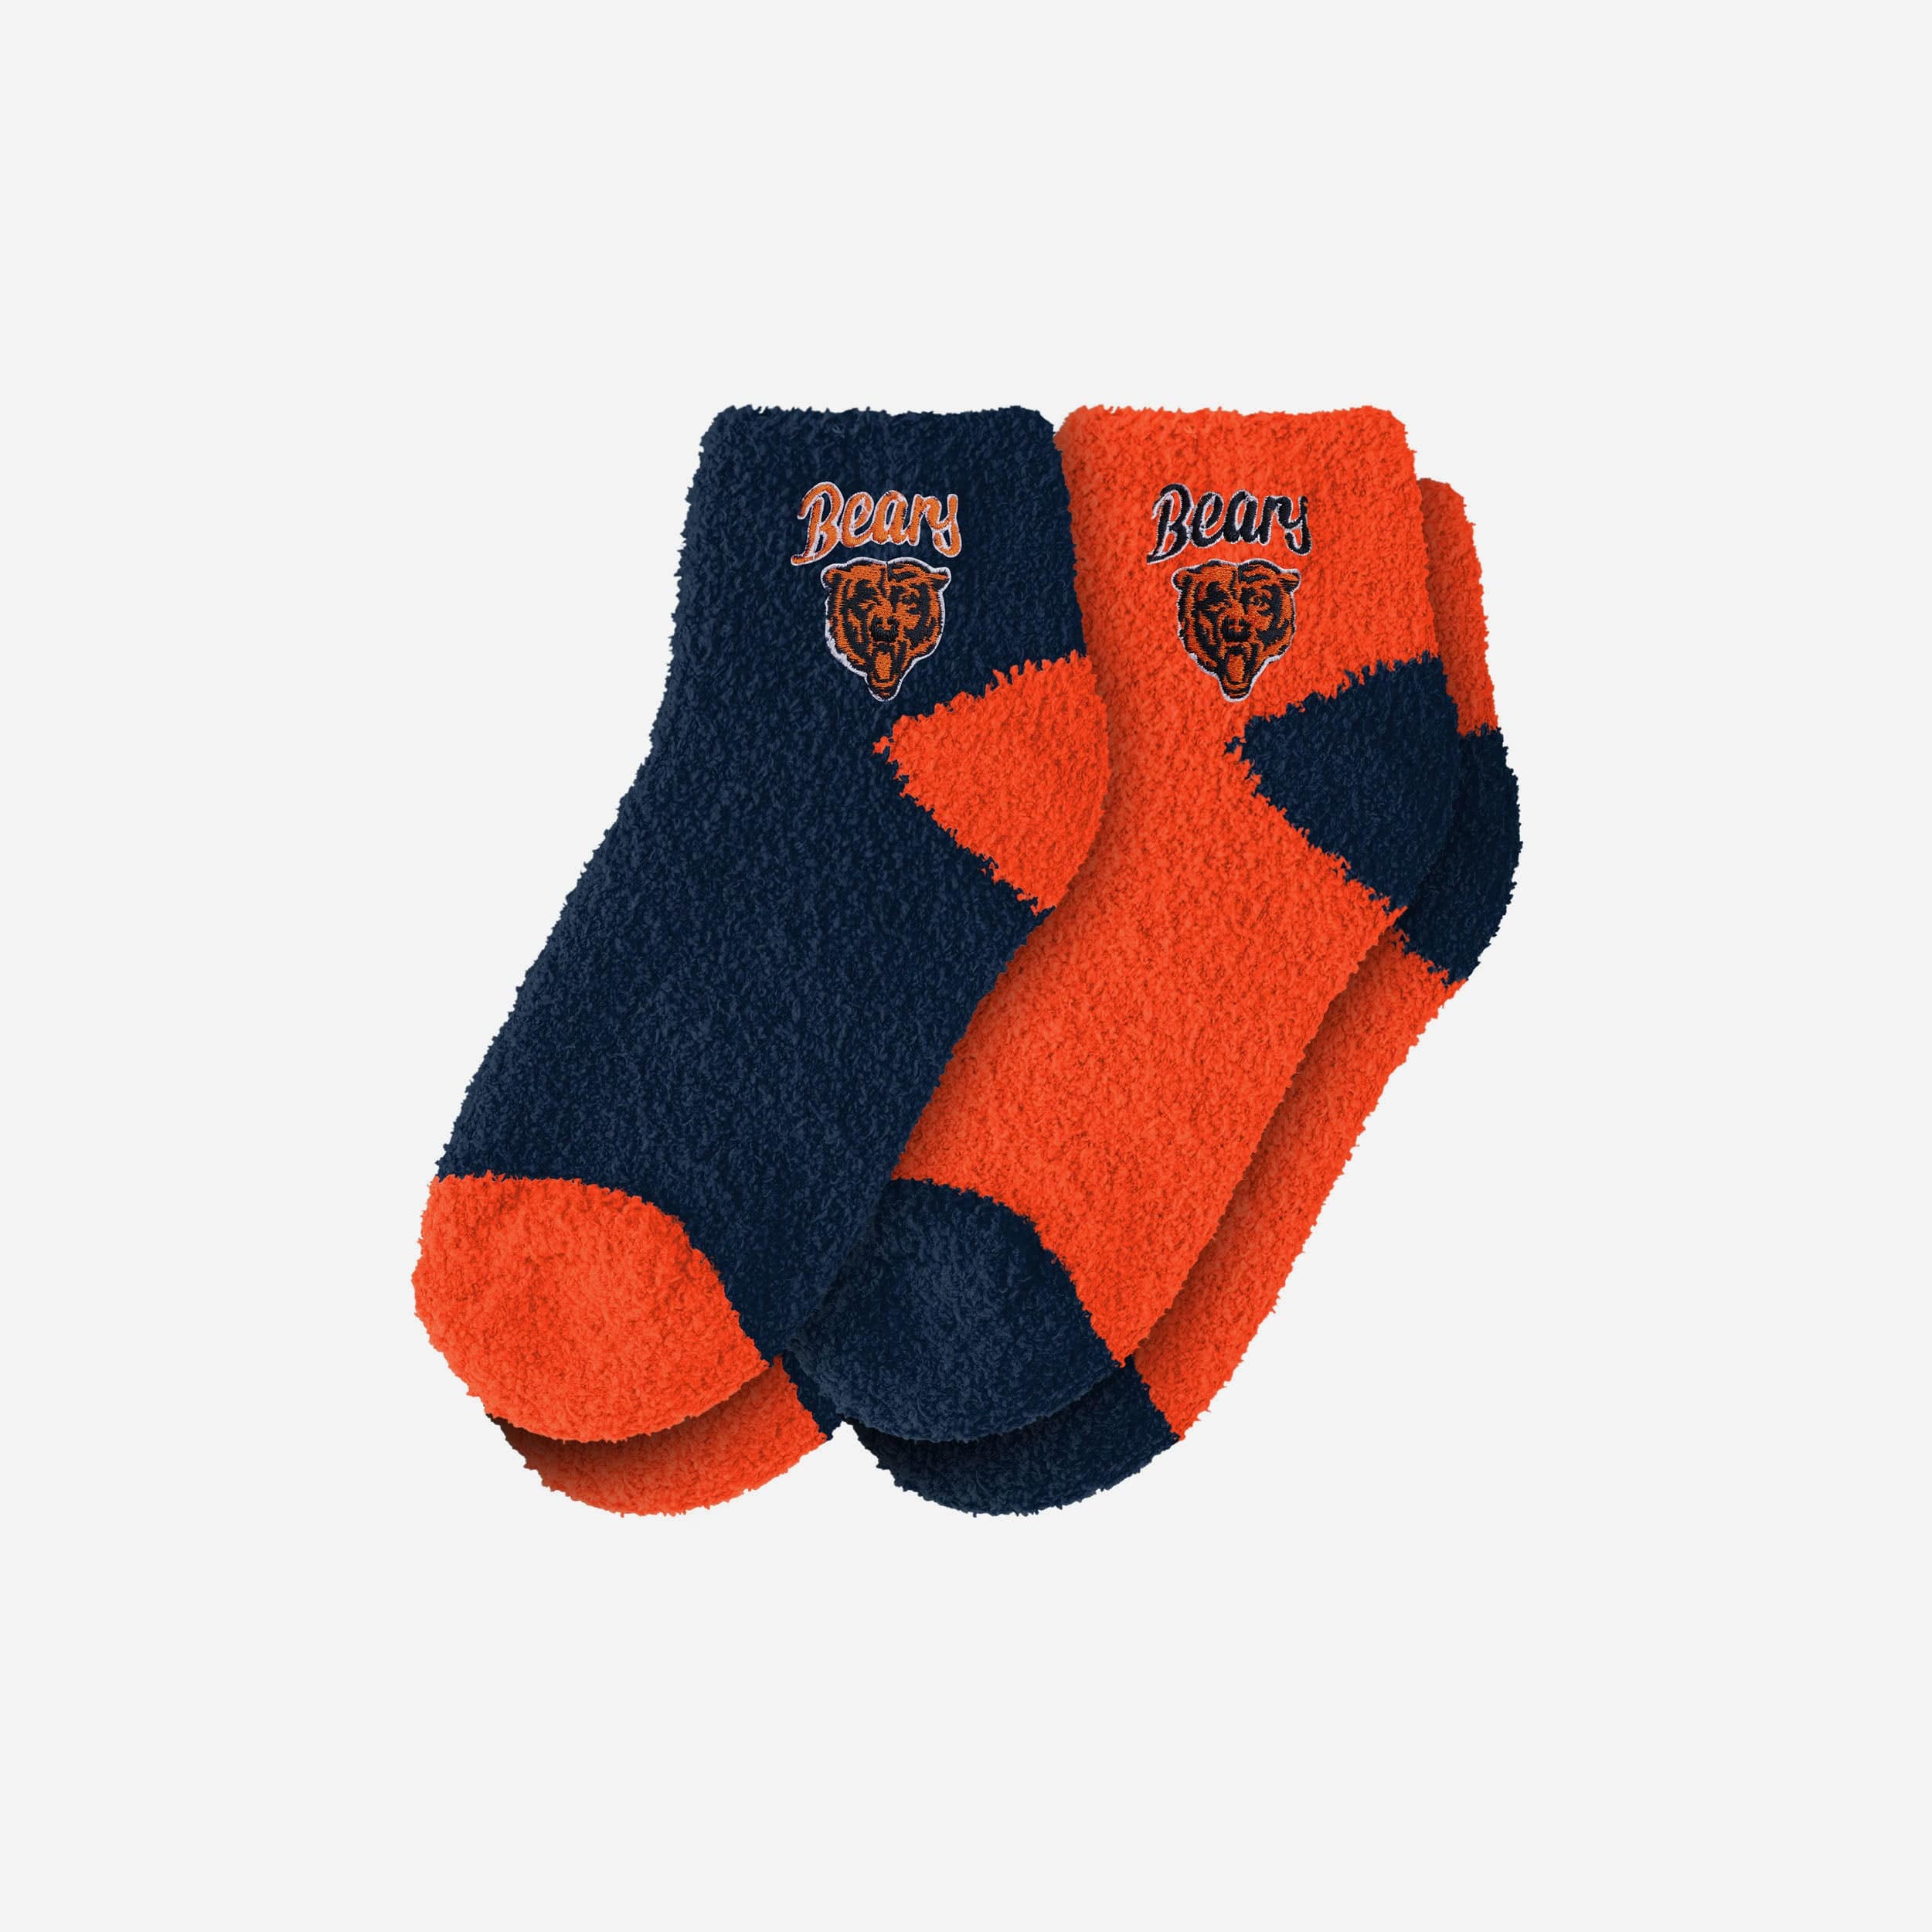 Official Baltimore Orioles Socks, Orioles Tube Socks, Ankle Socks